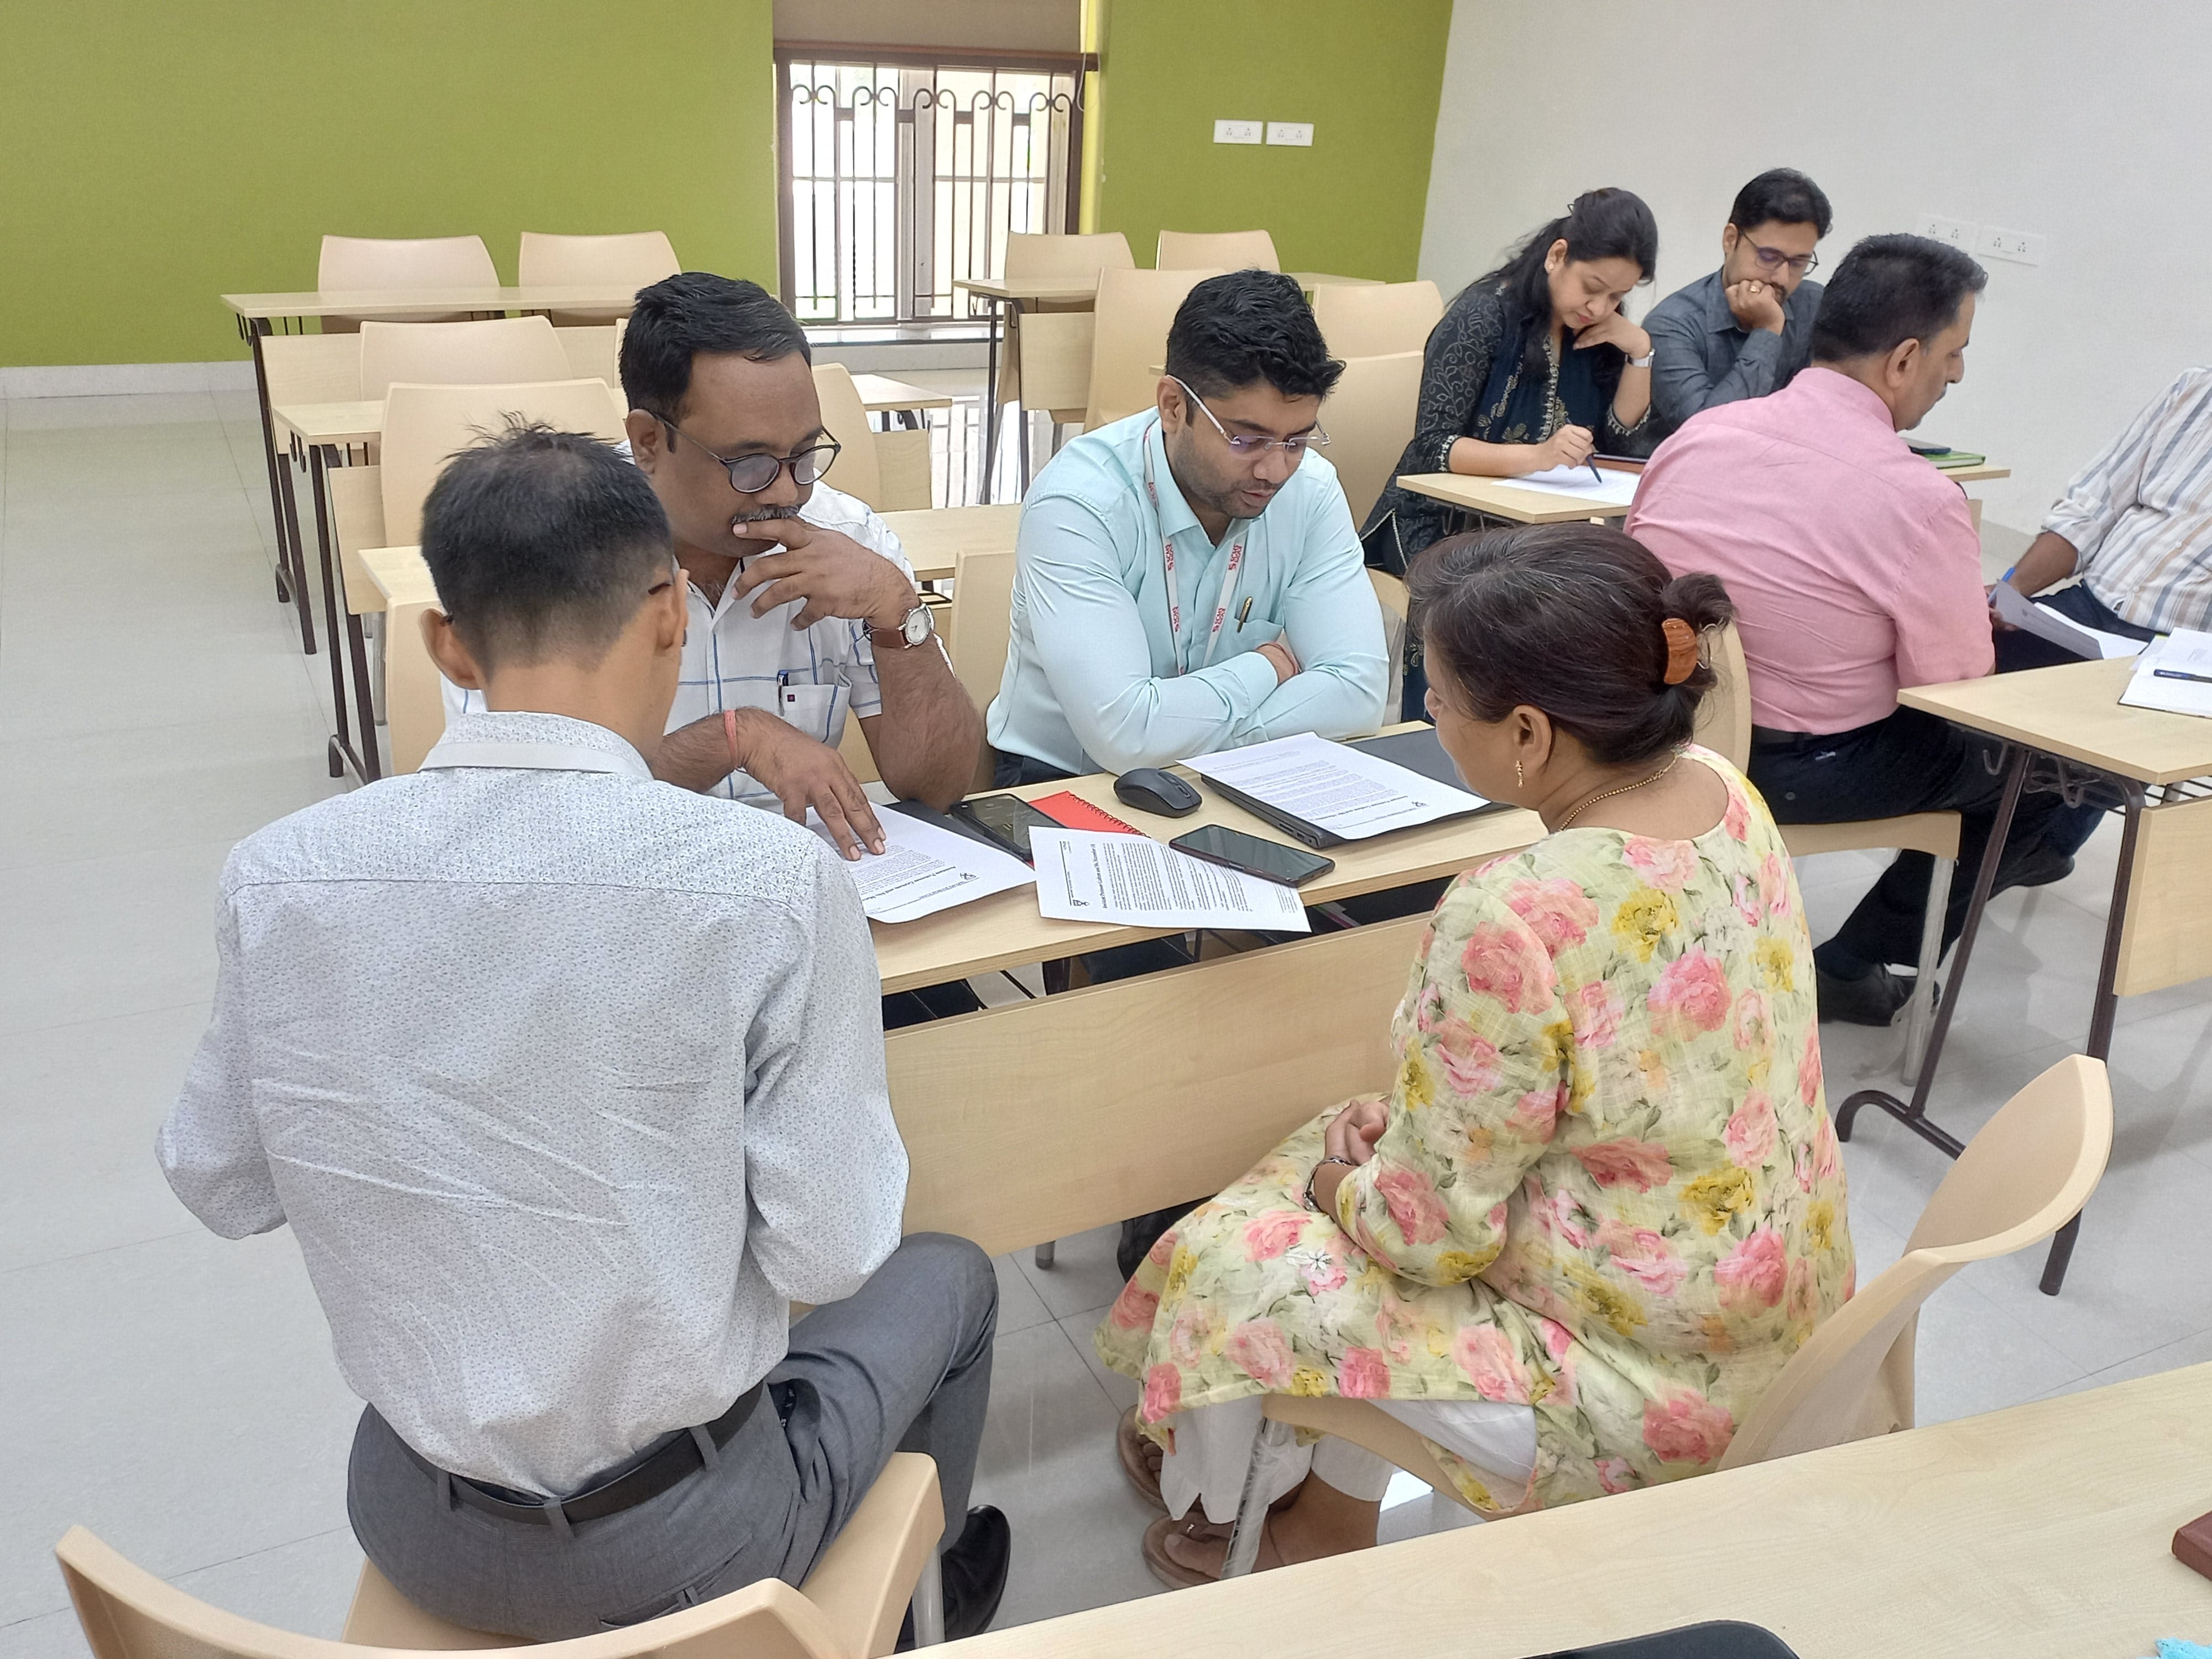 FDP Workshop at SCMS Nagpur